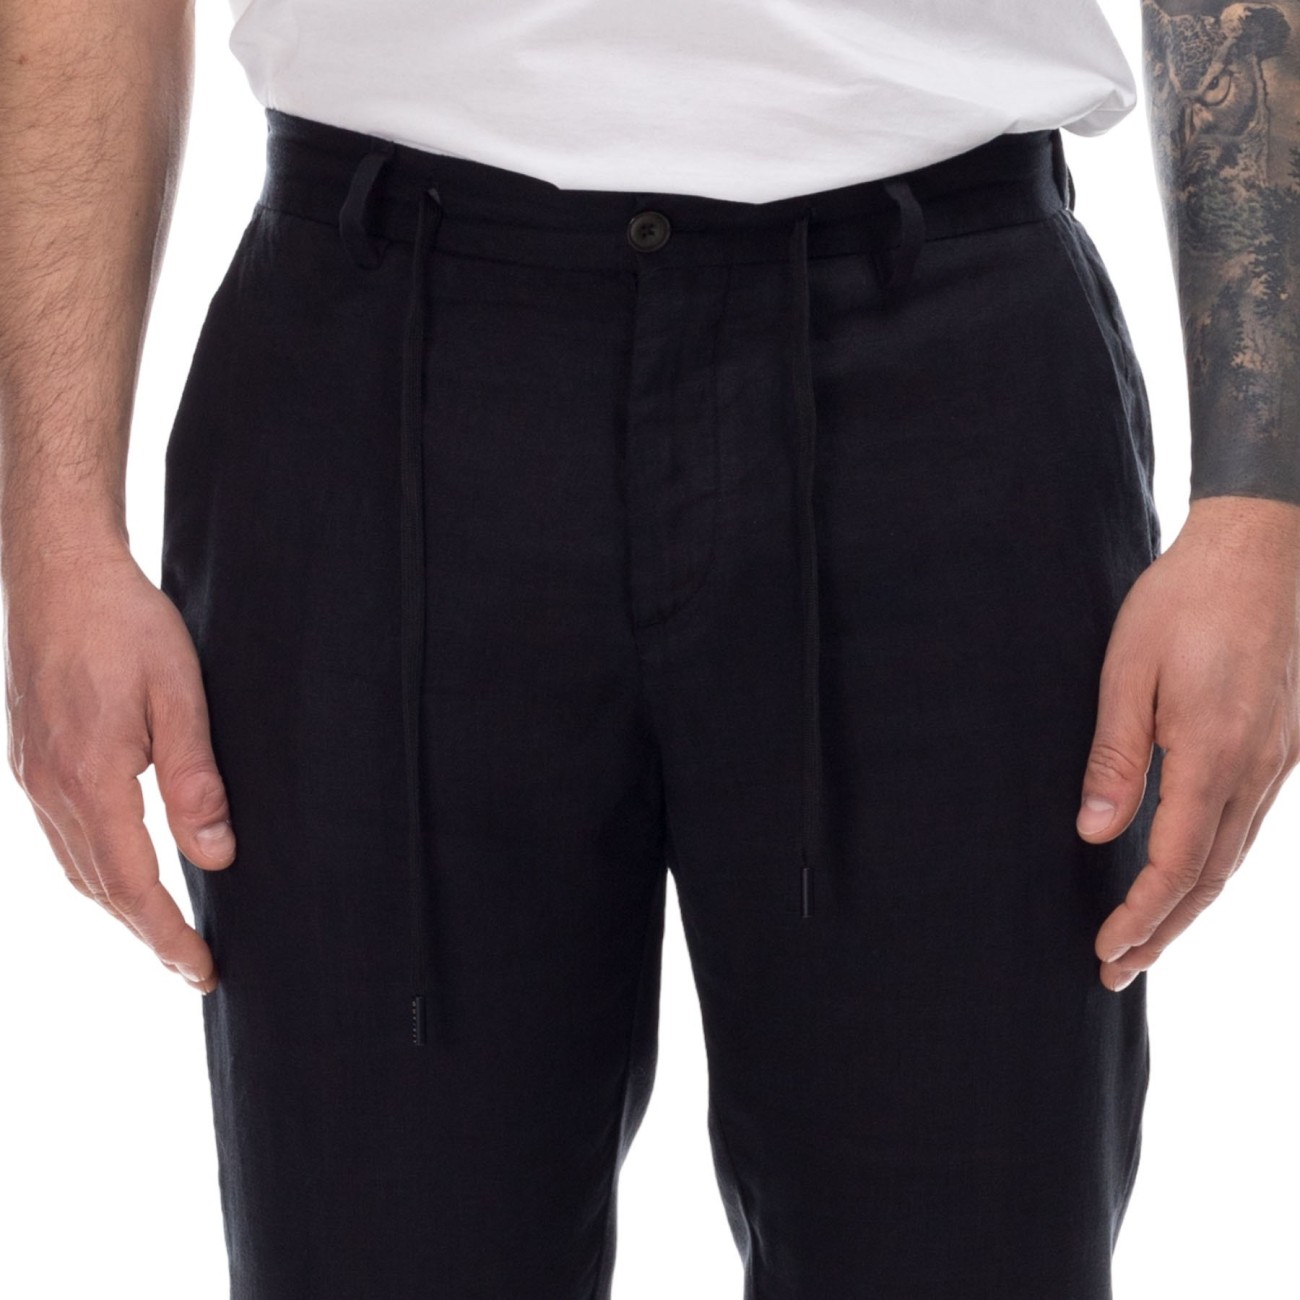 Black linen pant outfit